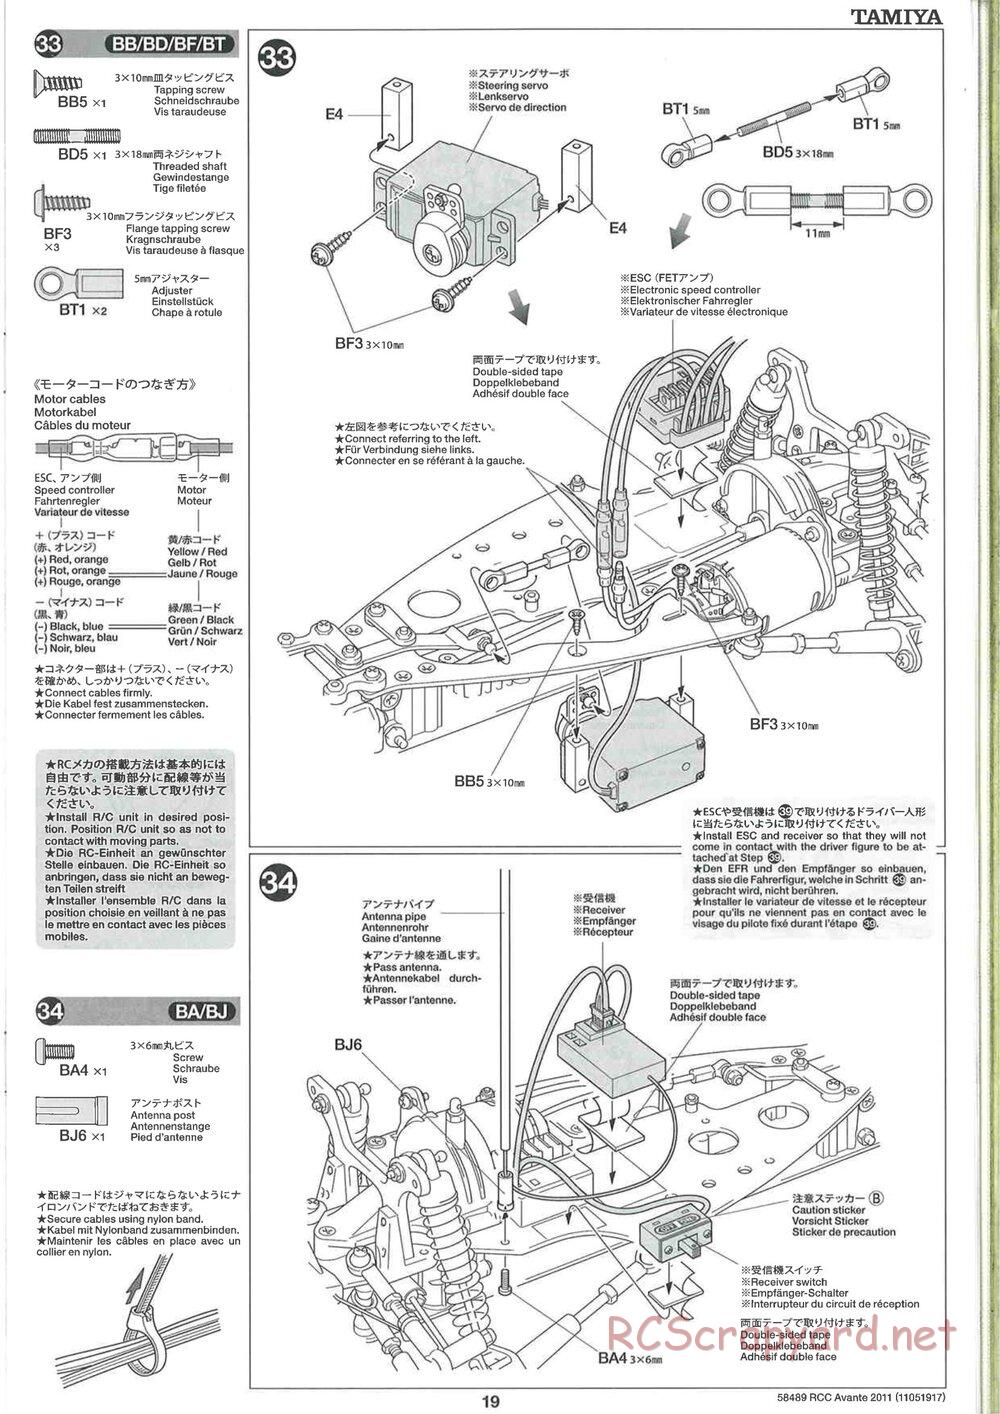 Tamiya - Avante 2011 - AV Chassis - Manual - Page 19